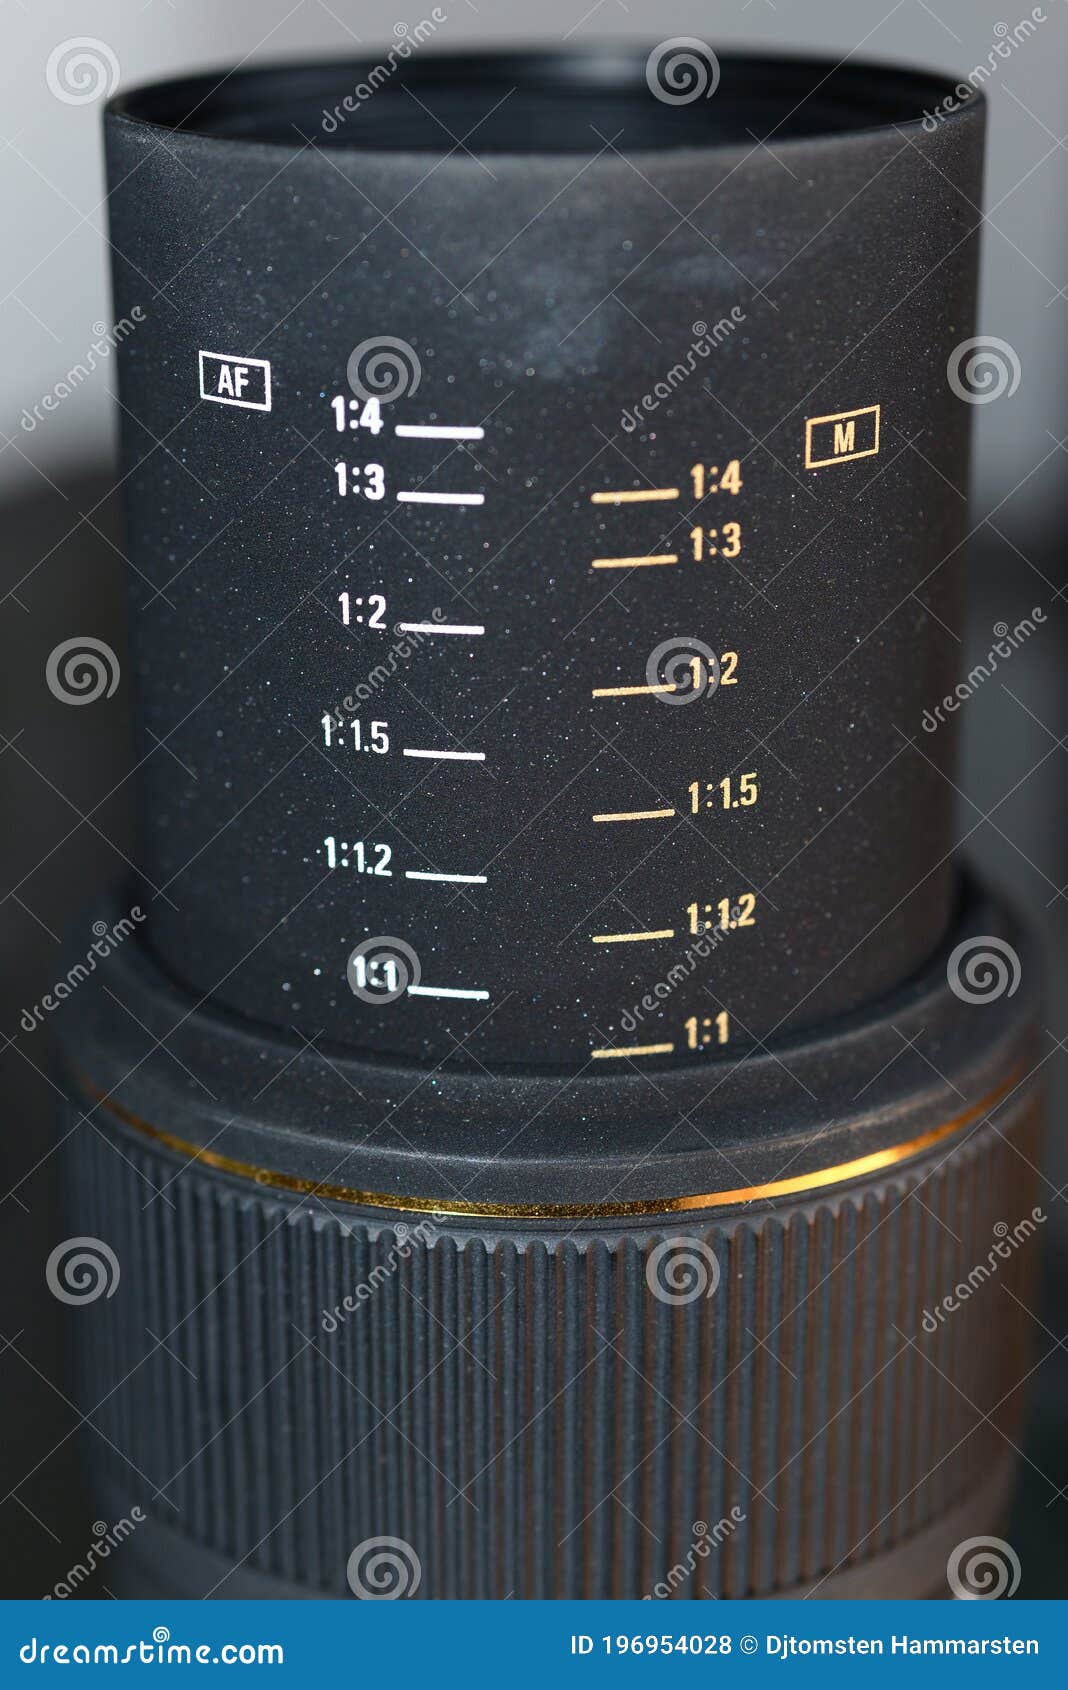 macro lens for nikon camera